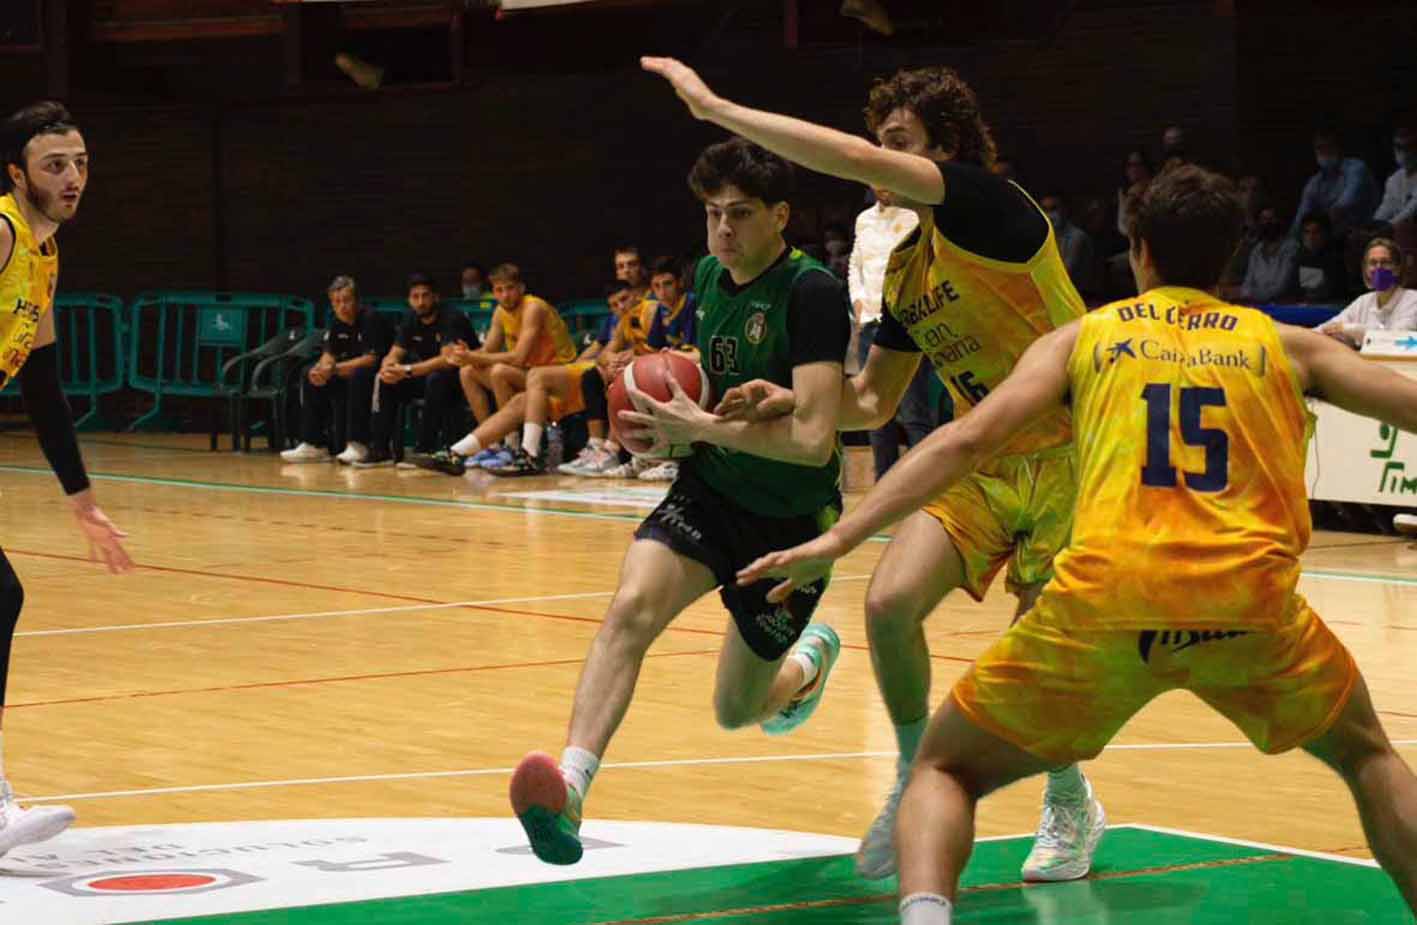 El Albacete Basket podría ser equipo de LEB Oro si elimina al Cantabria Torrelavega. Foto: Albacete Basket.